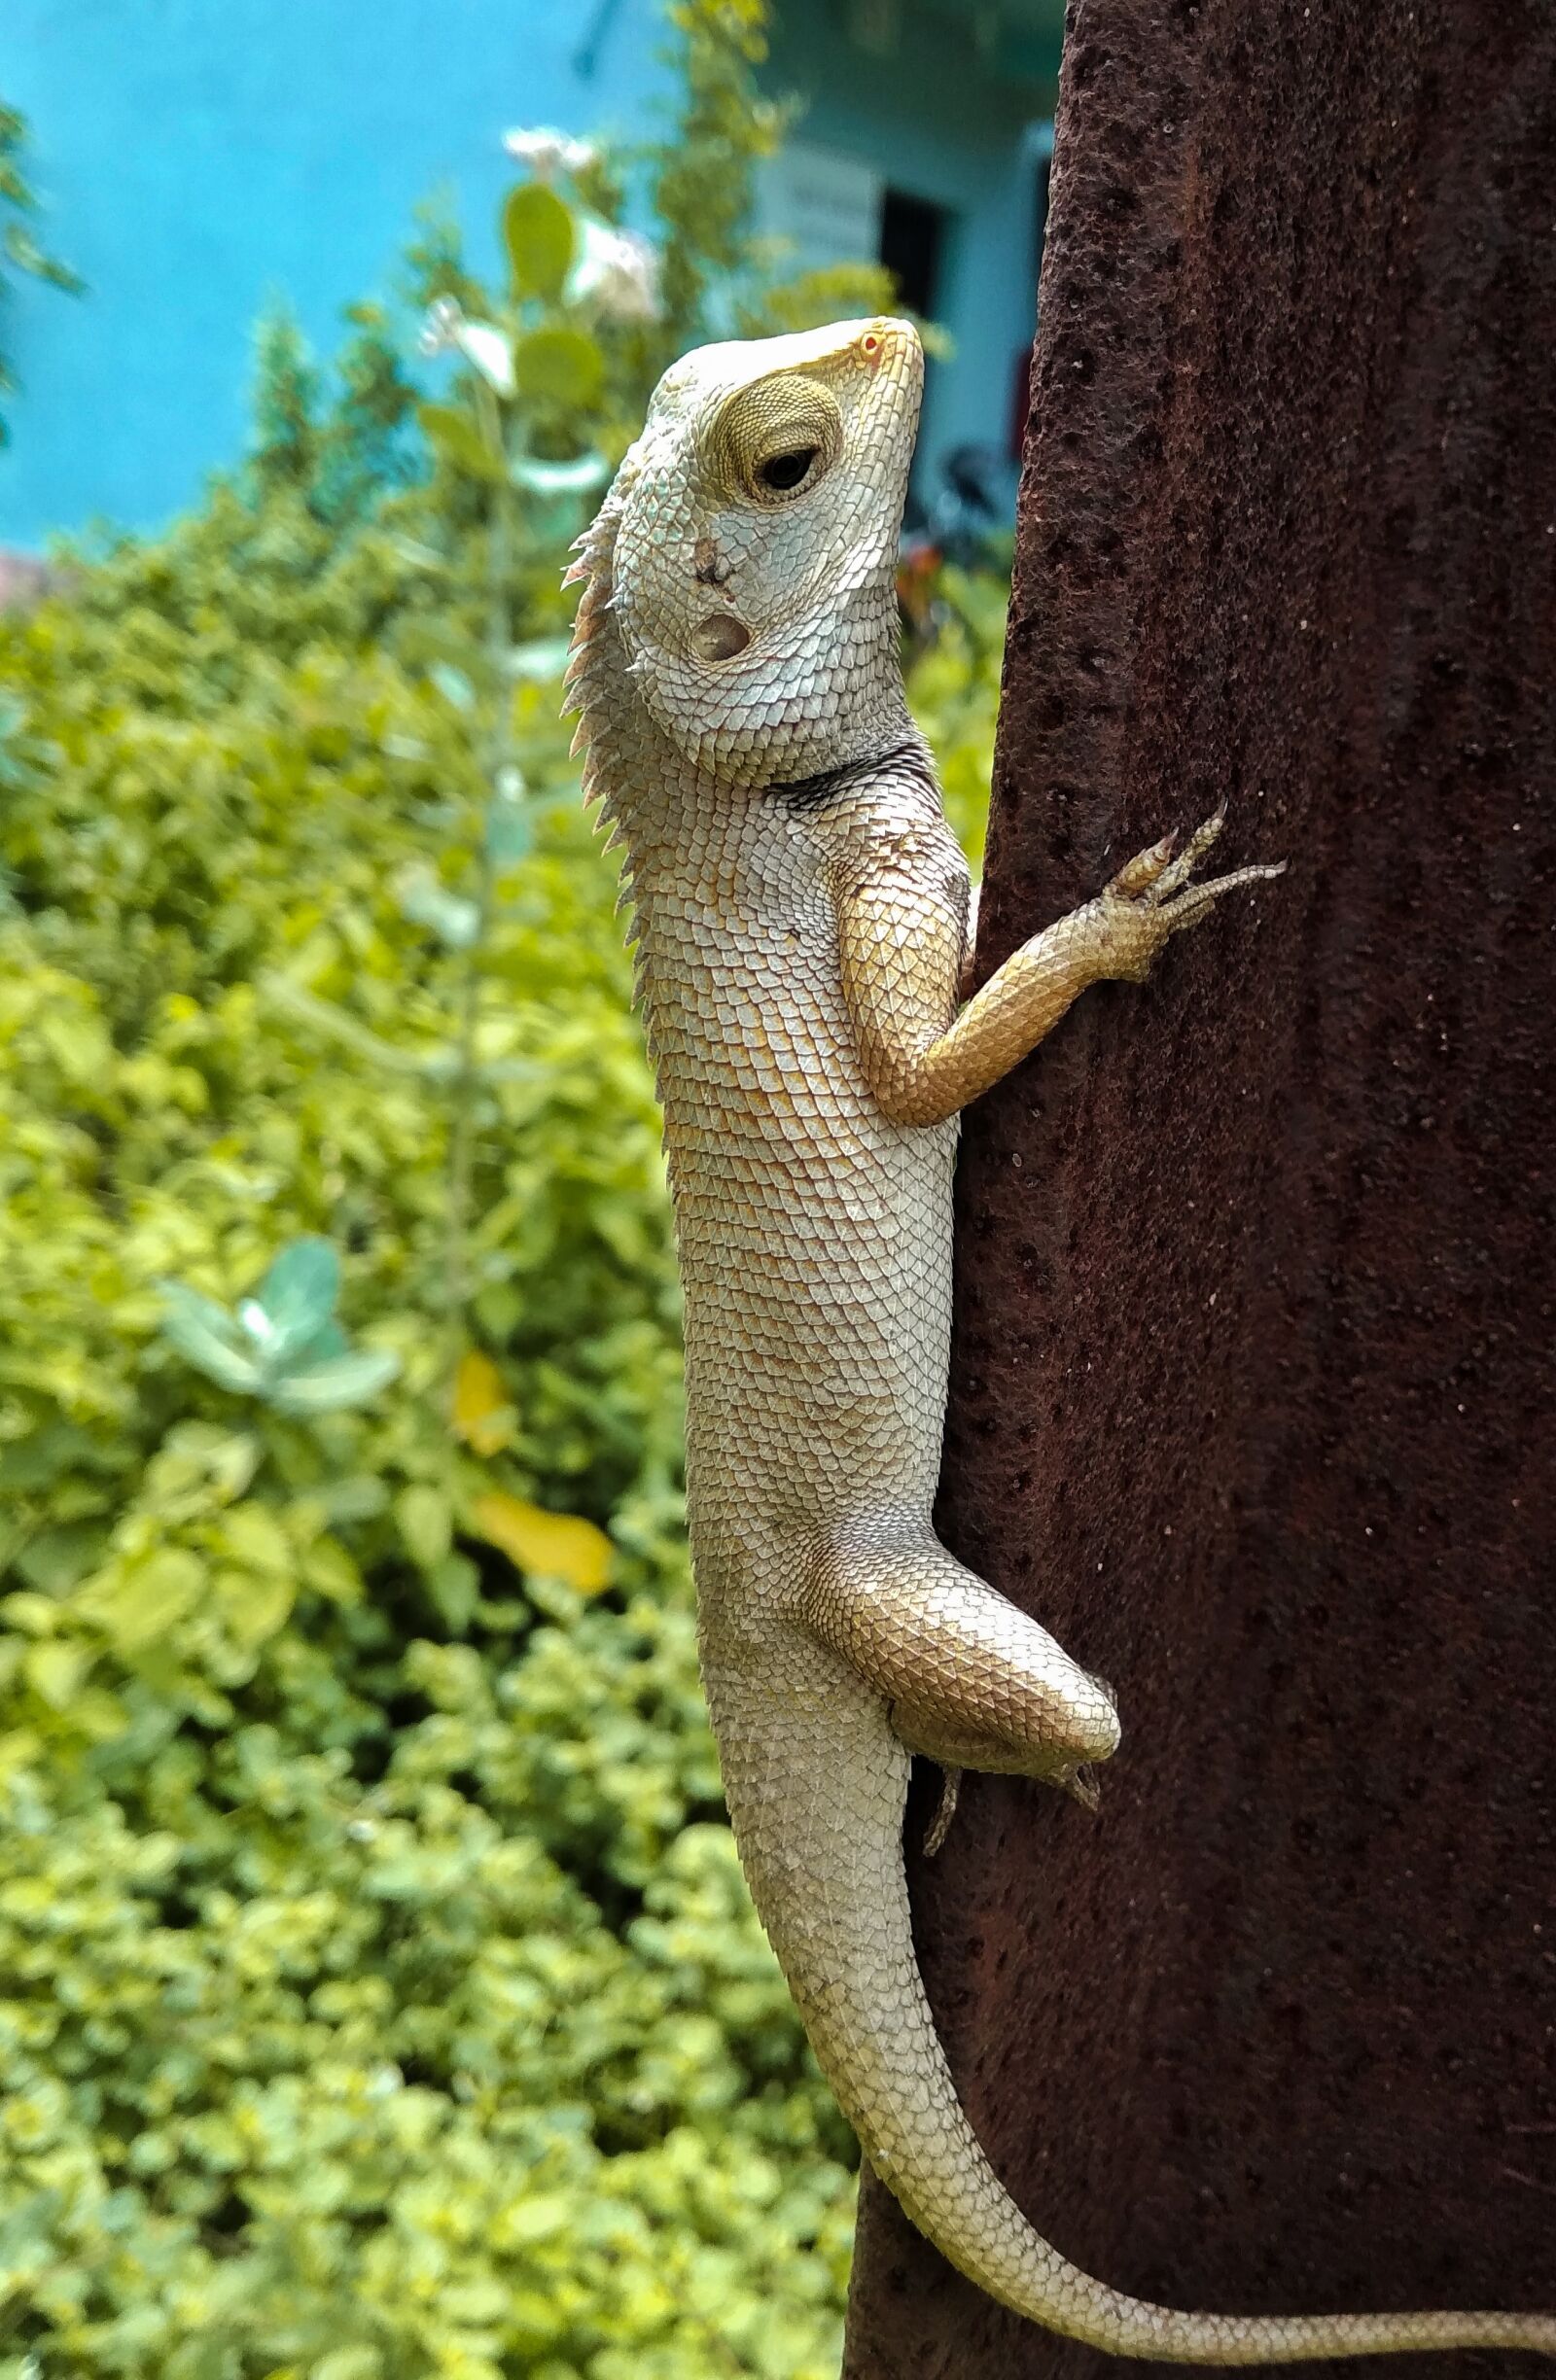 Xiaomi Redmi 5A sample photo. Garden lizard, lizard, wildlife photography